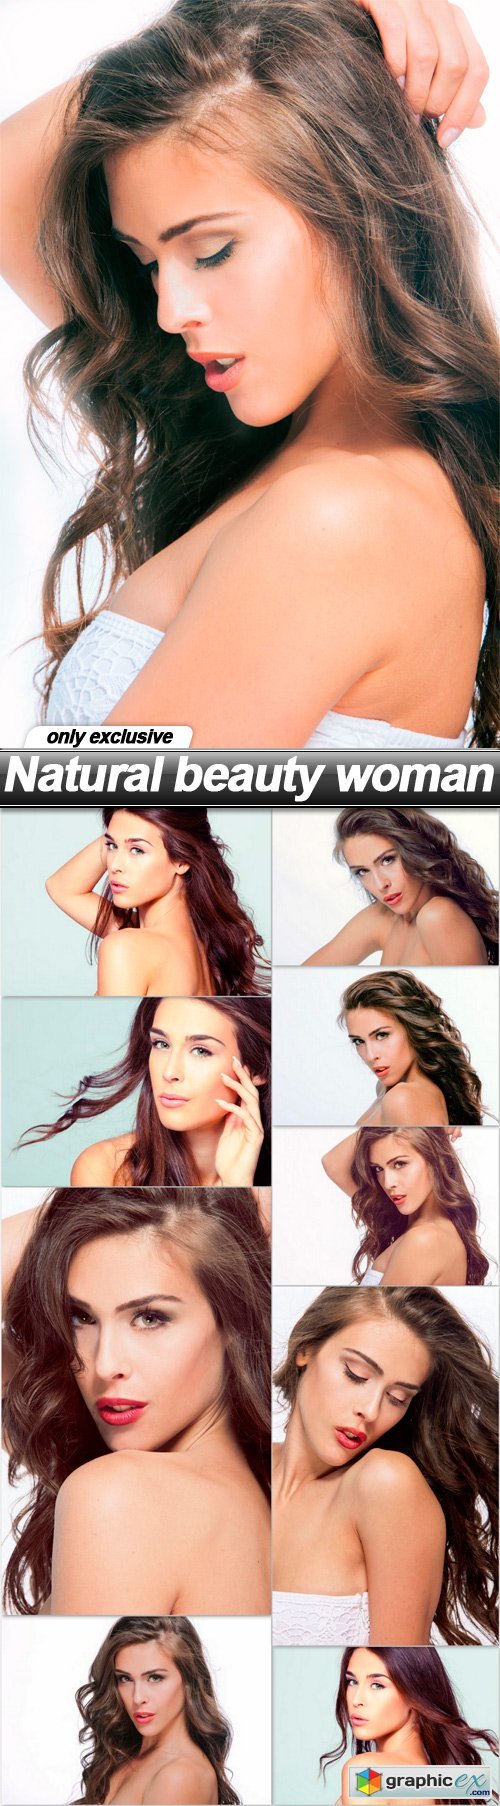 Natural beauty woman - 10 UHQ JPEG